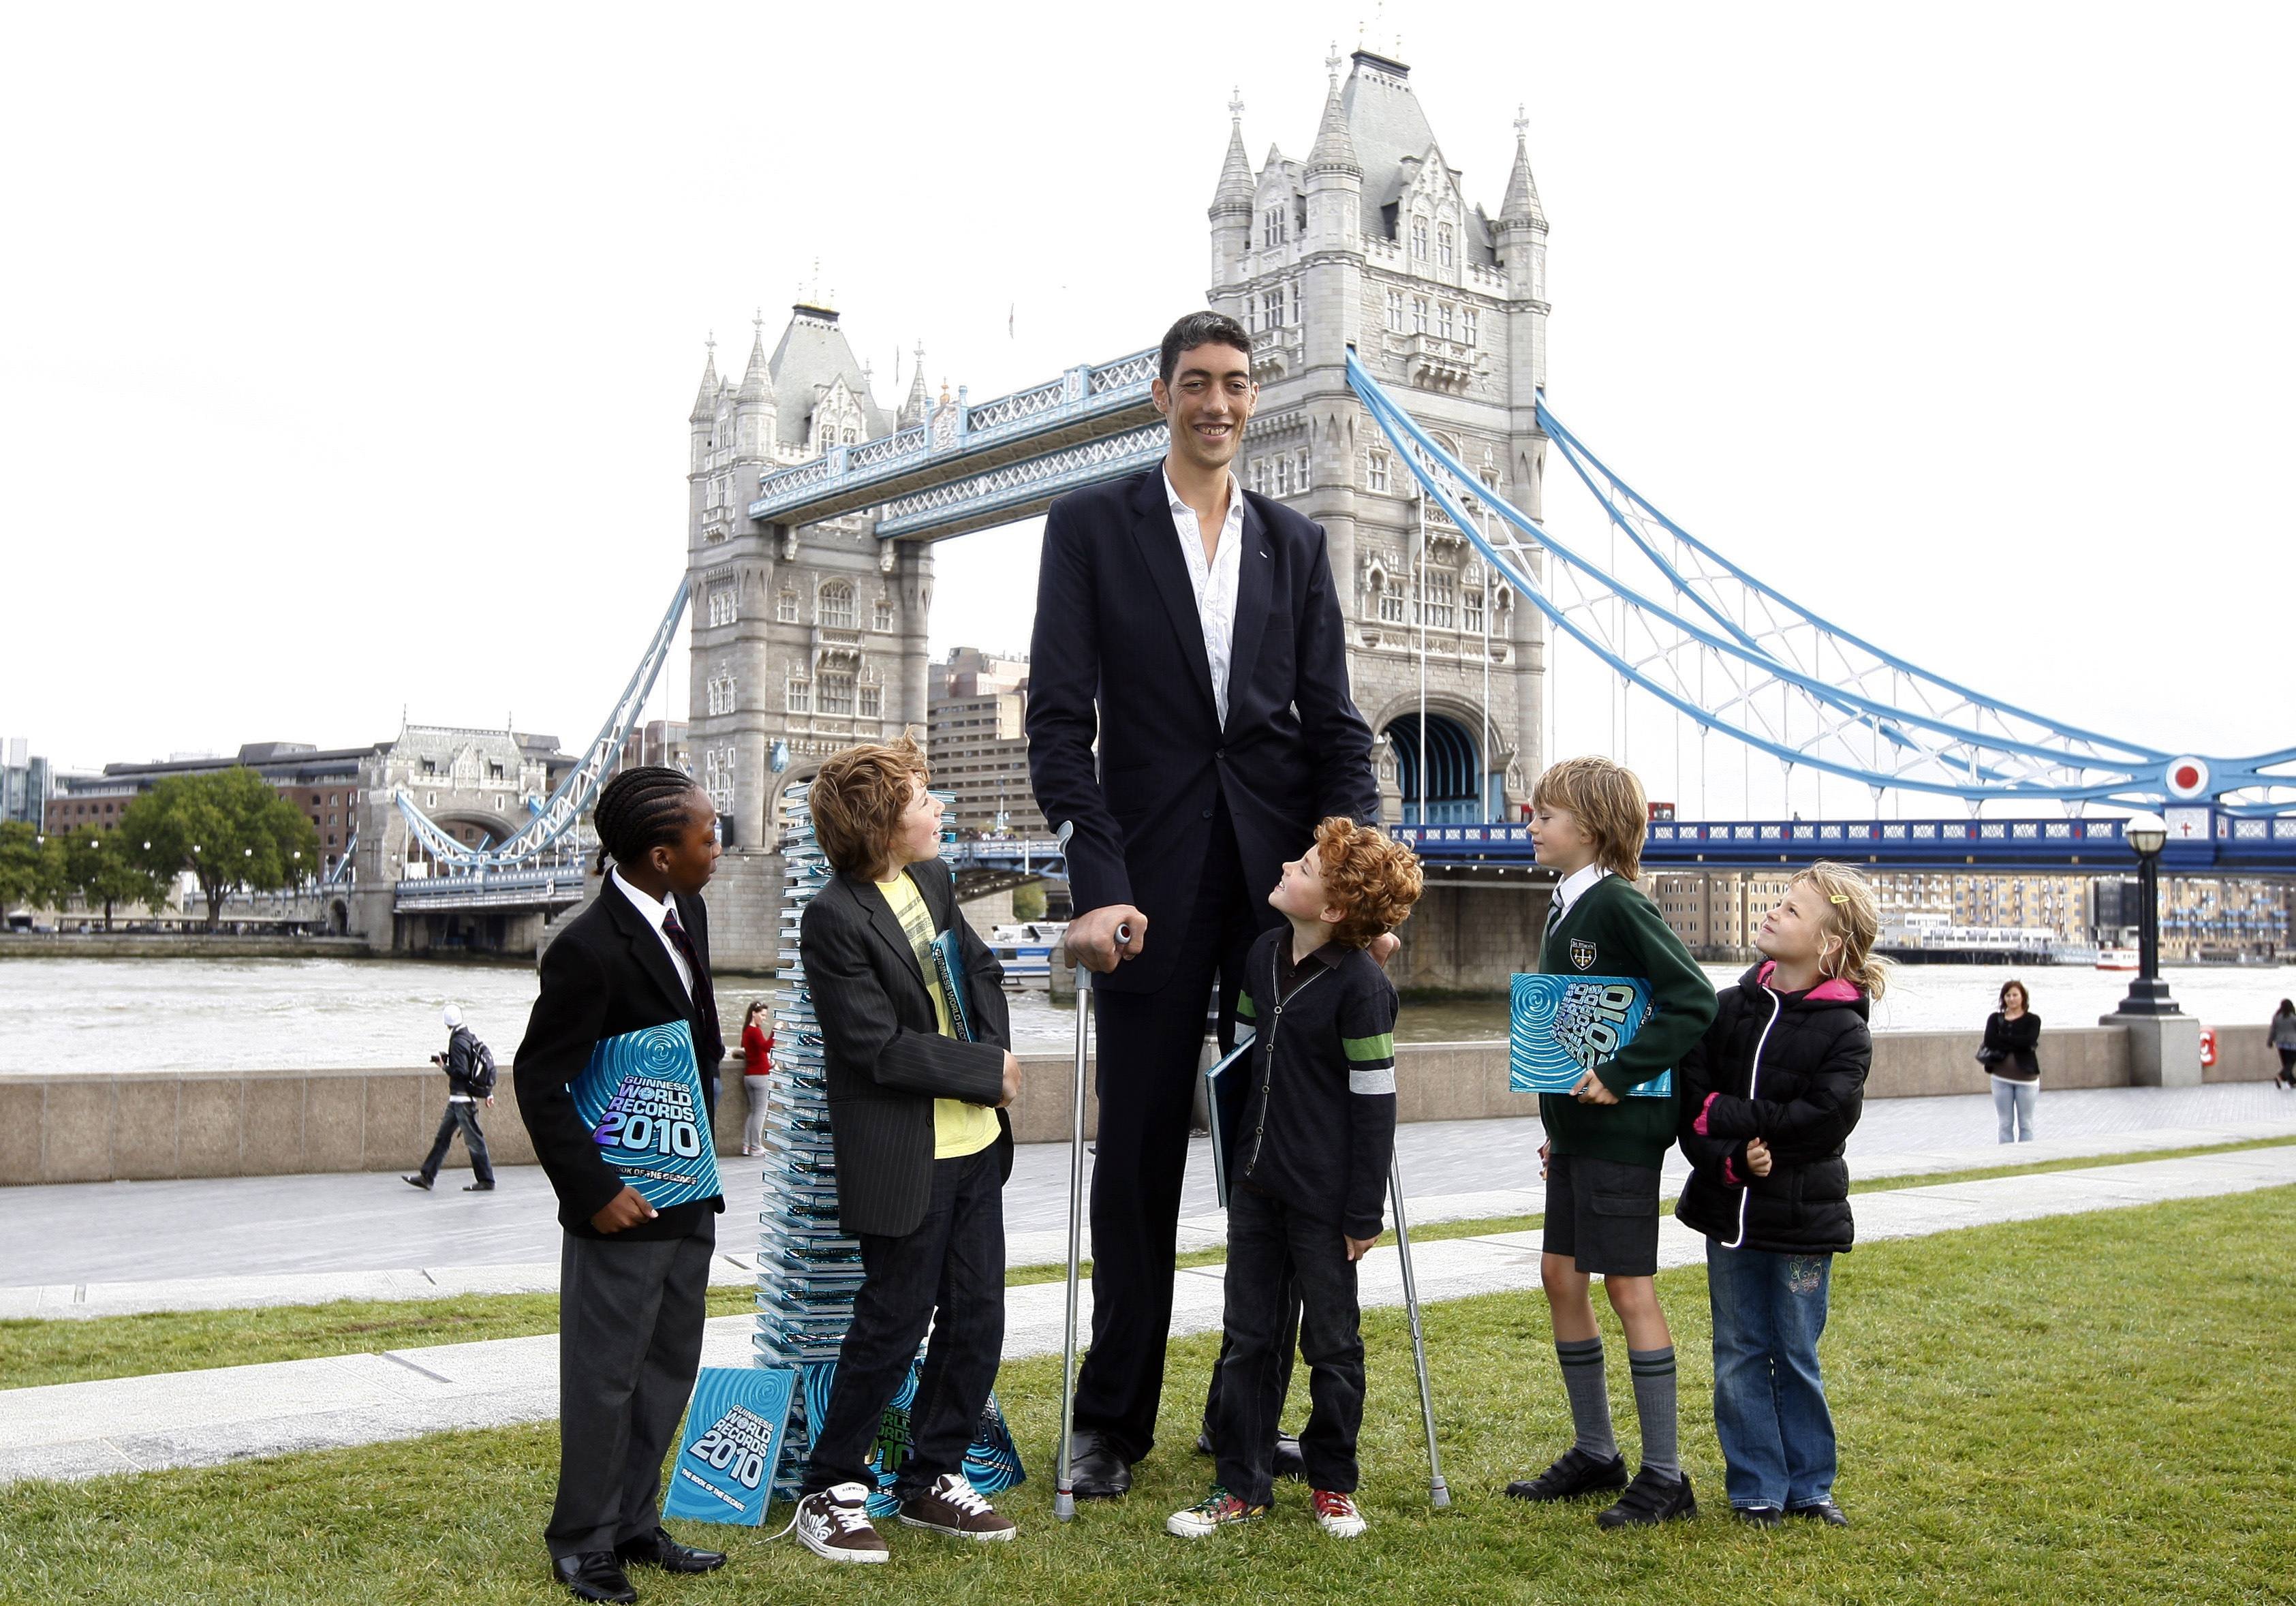 Самого длинного человека. Самый высокий человек в мире 2021.